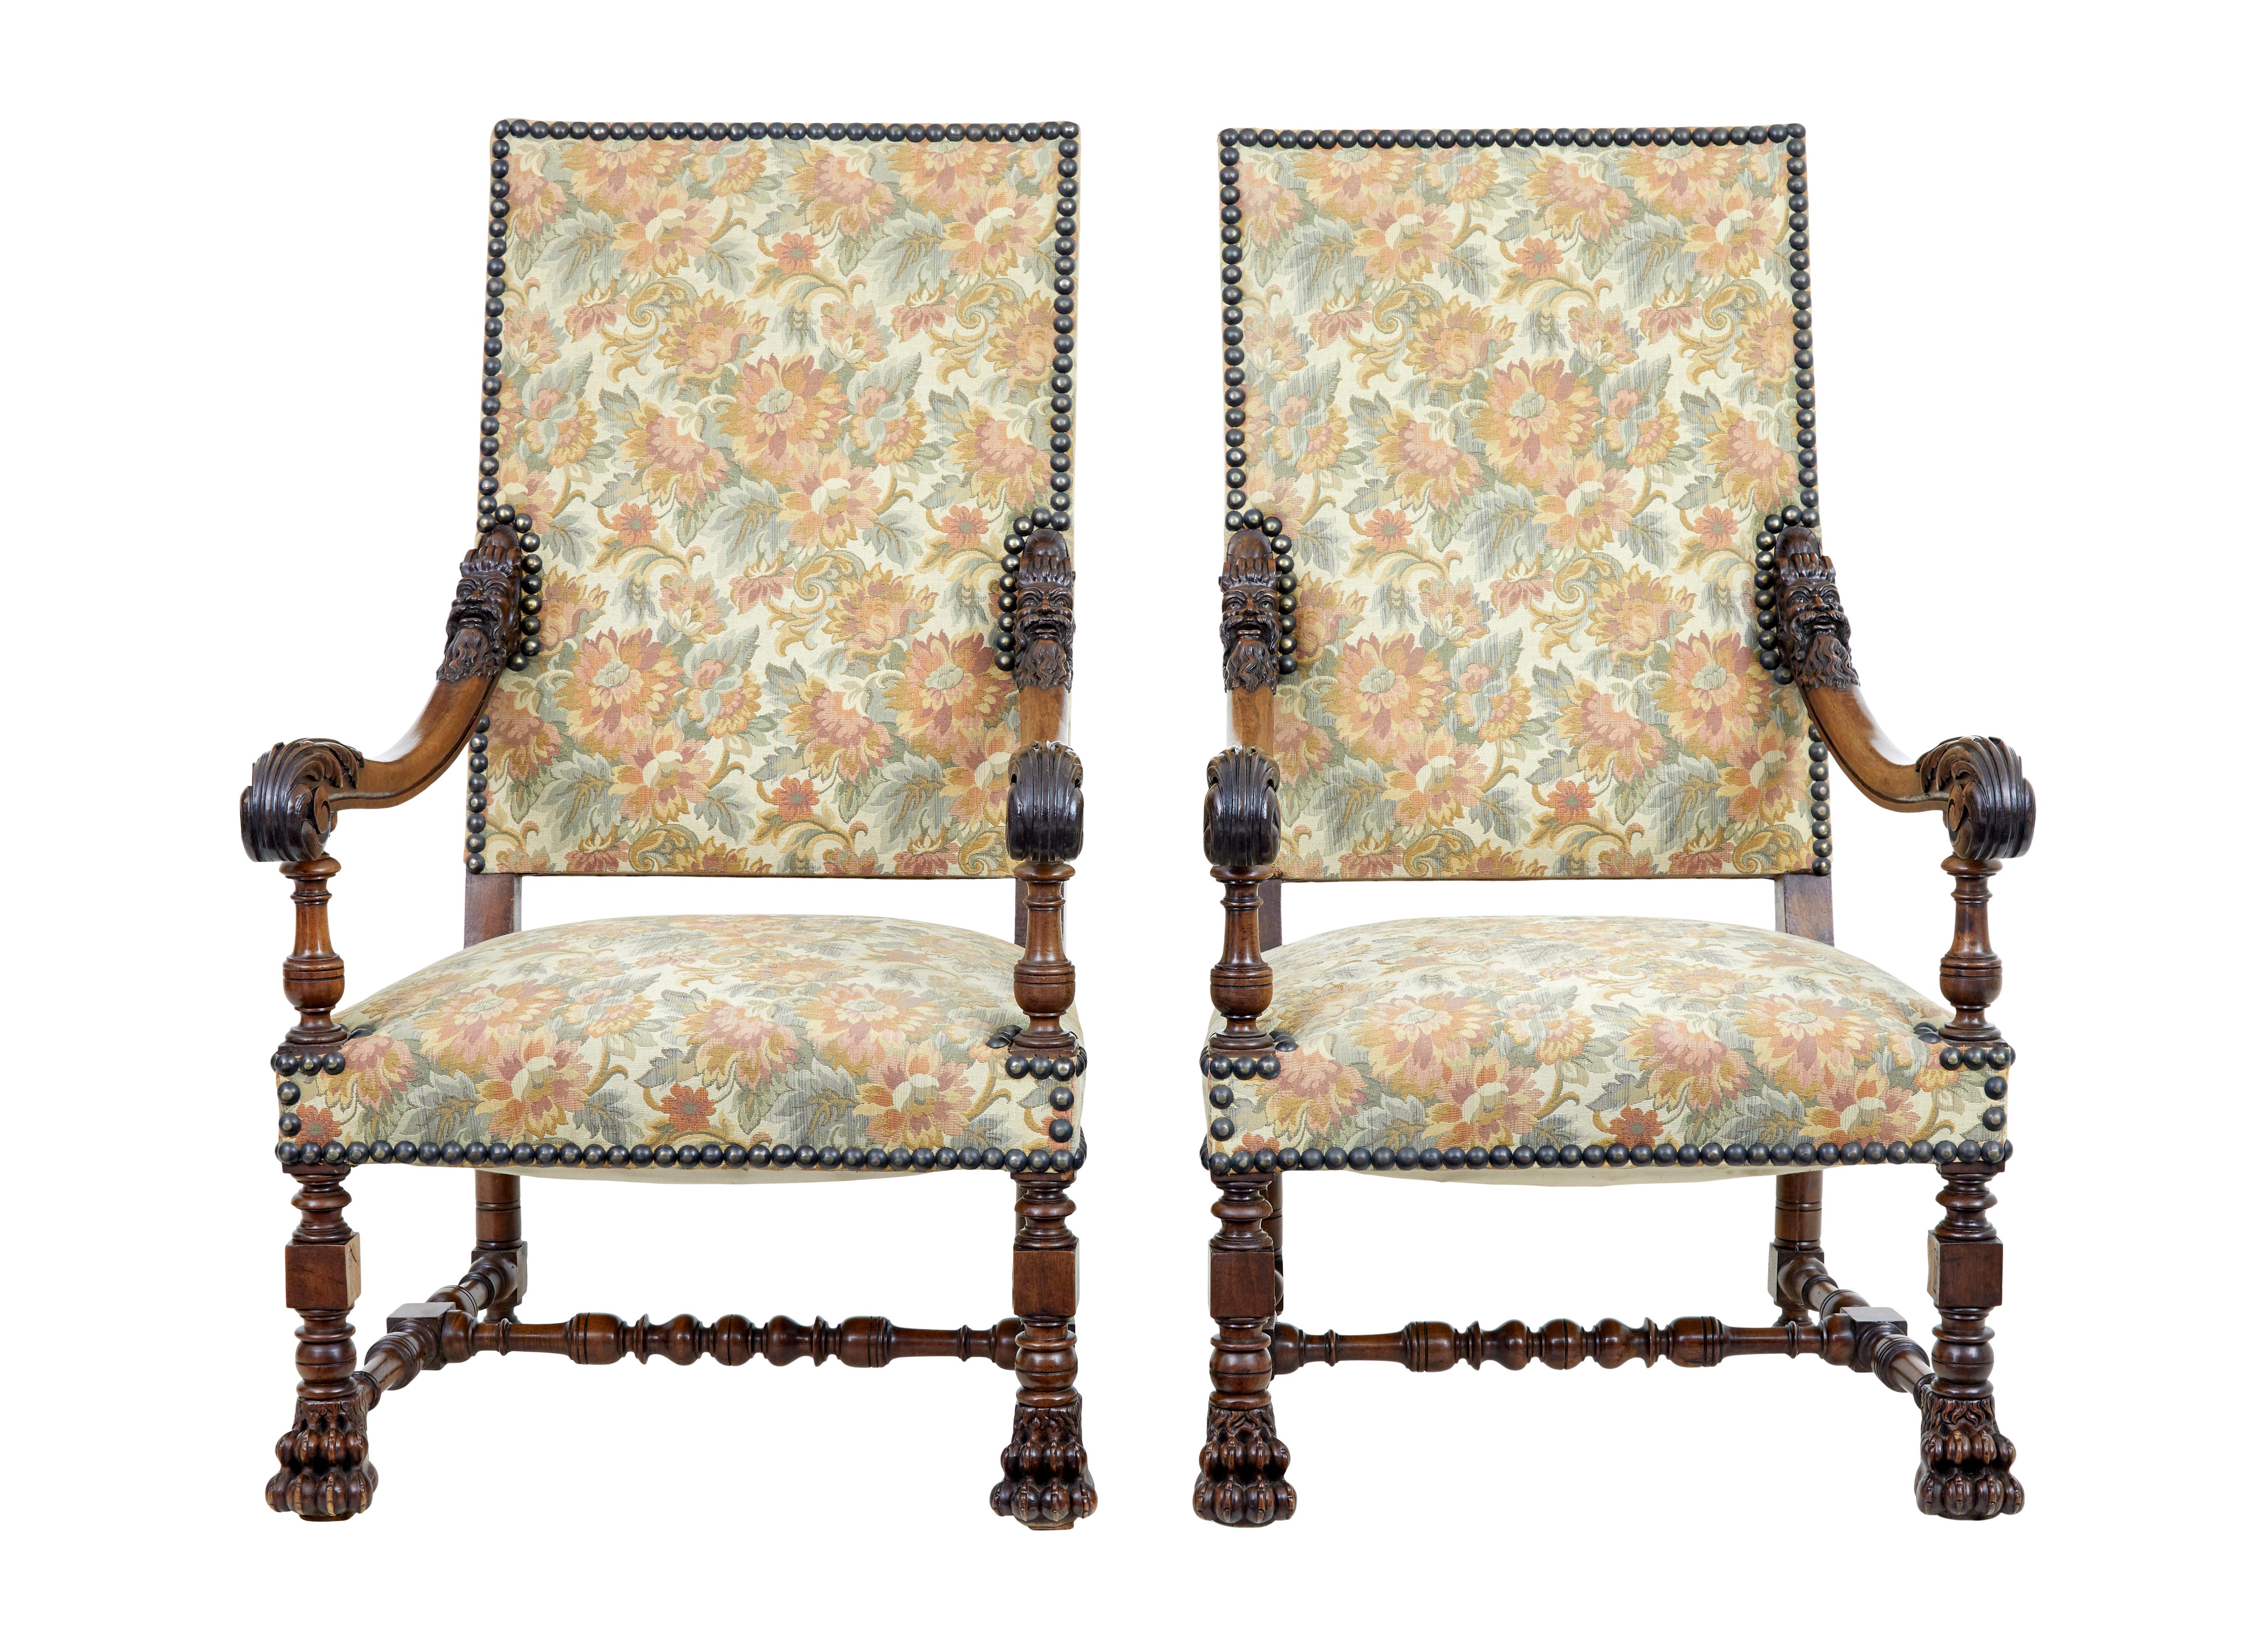 Belle paire de fauteuils en noyer sculpté du XIXe siècle, vers 1870.

Paire de fauteuils français magnifiquement sculptés et de bonnes proportions. Têtes mythiques sculptées au sommet de chaque bras, bras à enroulement. Elle repose sur des pieds